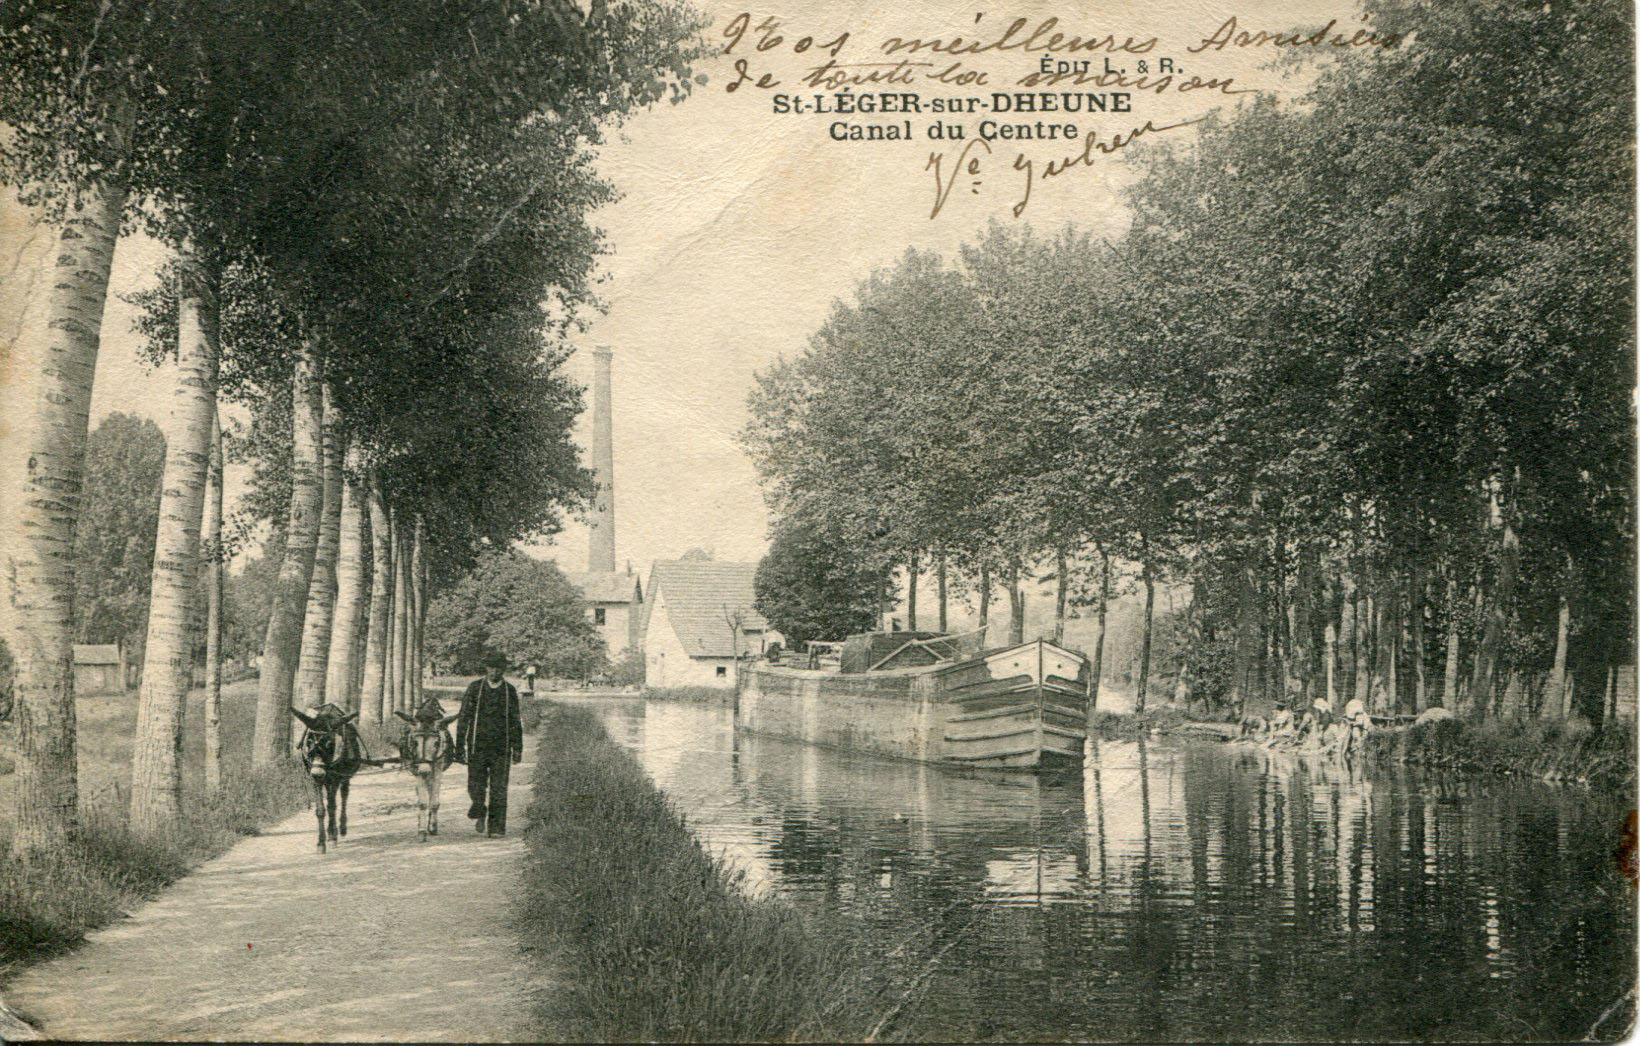 Canal du Centre